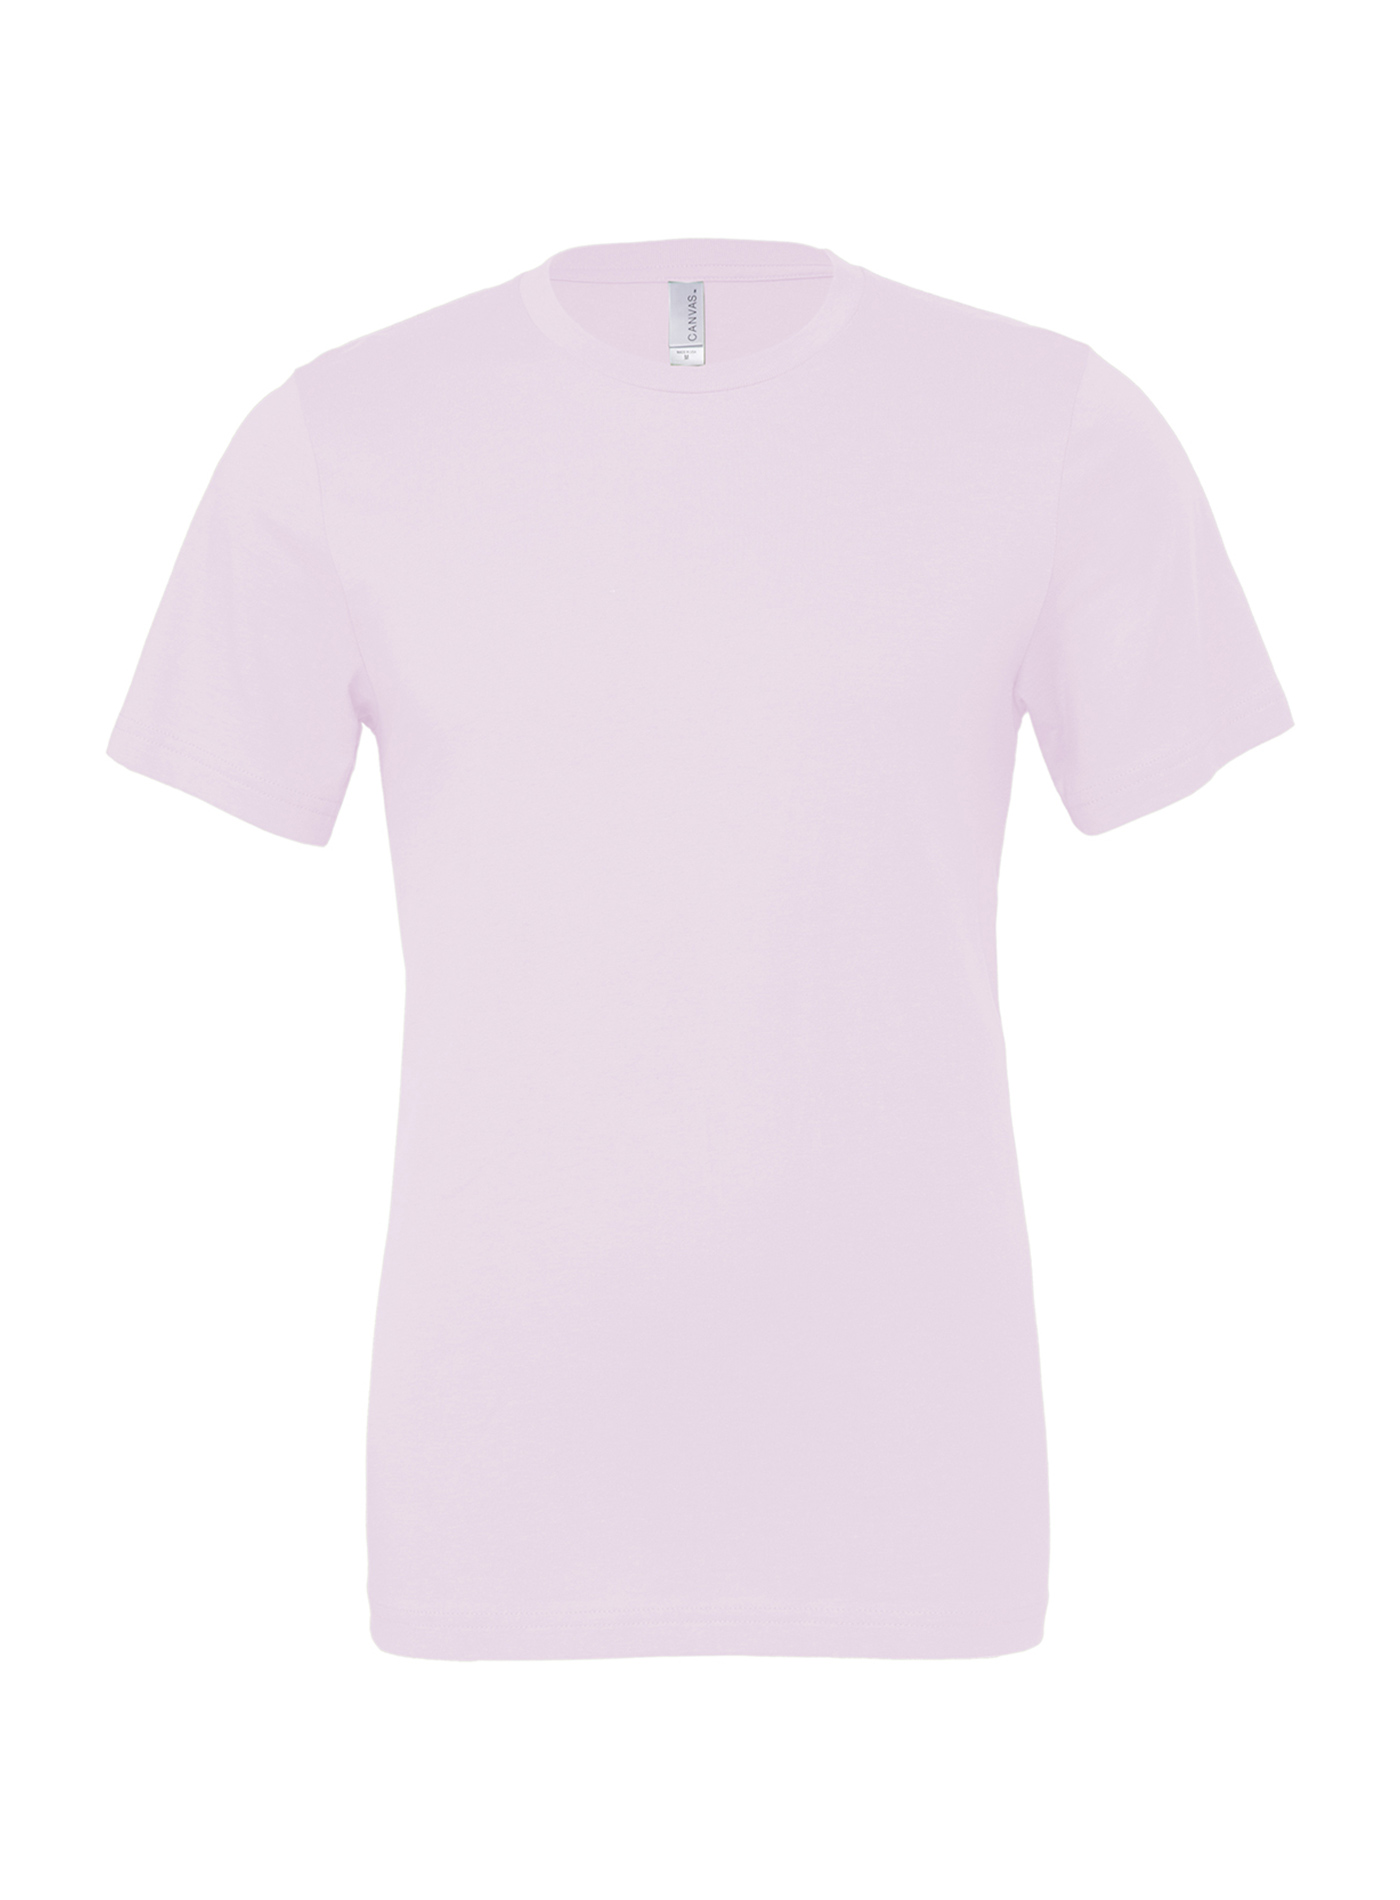 Unisex tričko Bella + Canvas Jersey - Bledě růžová XL